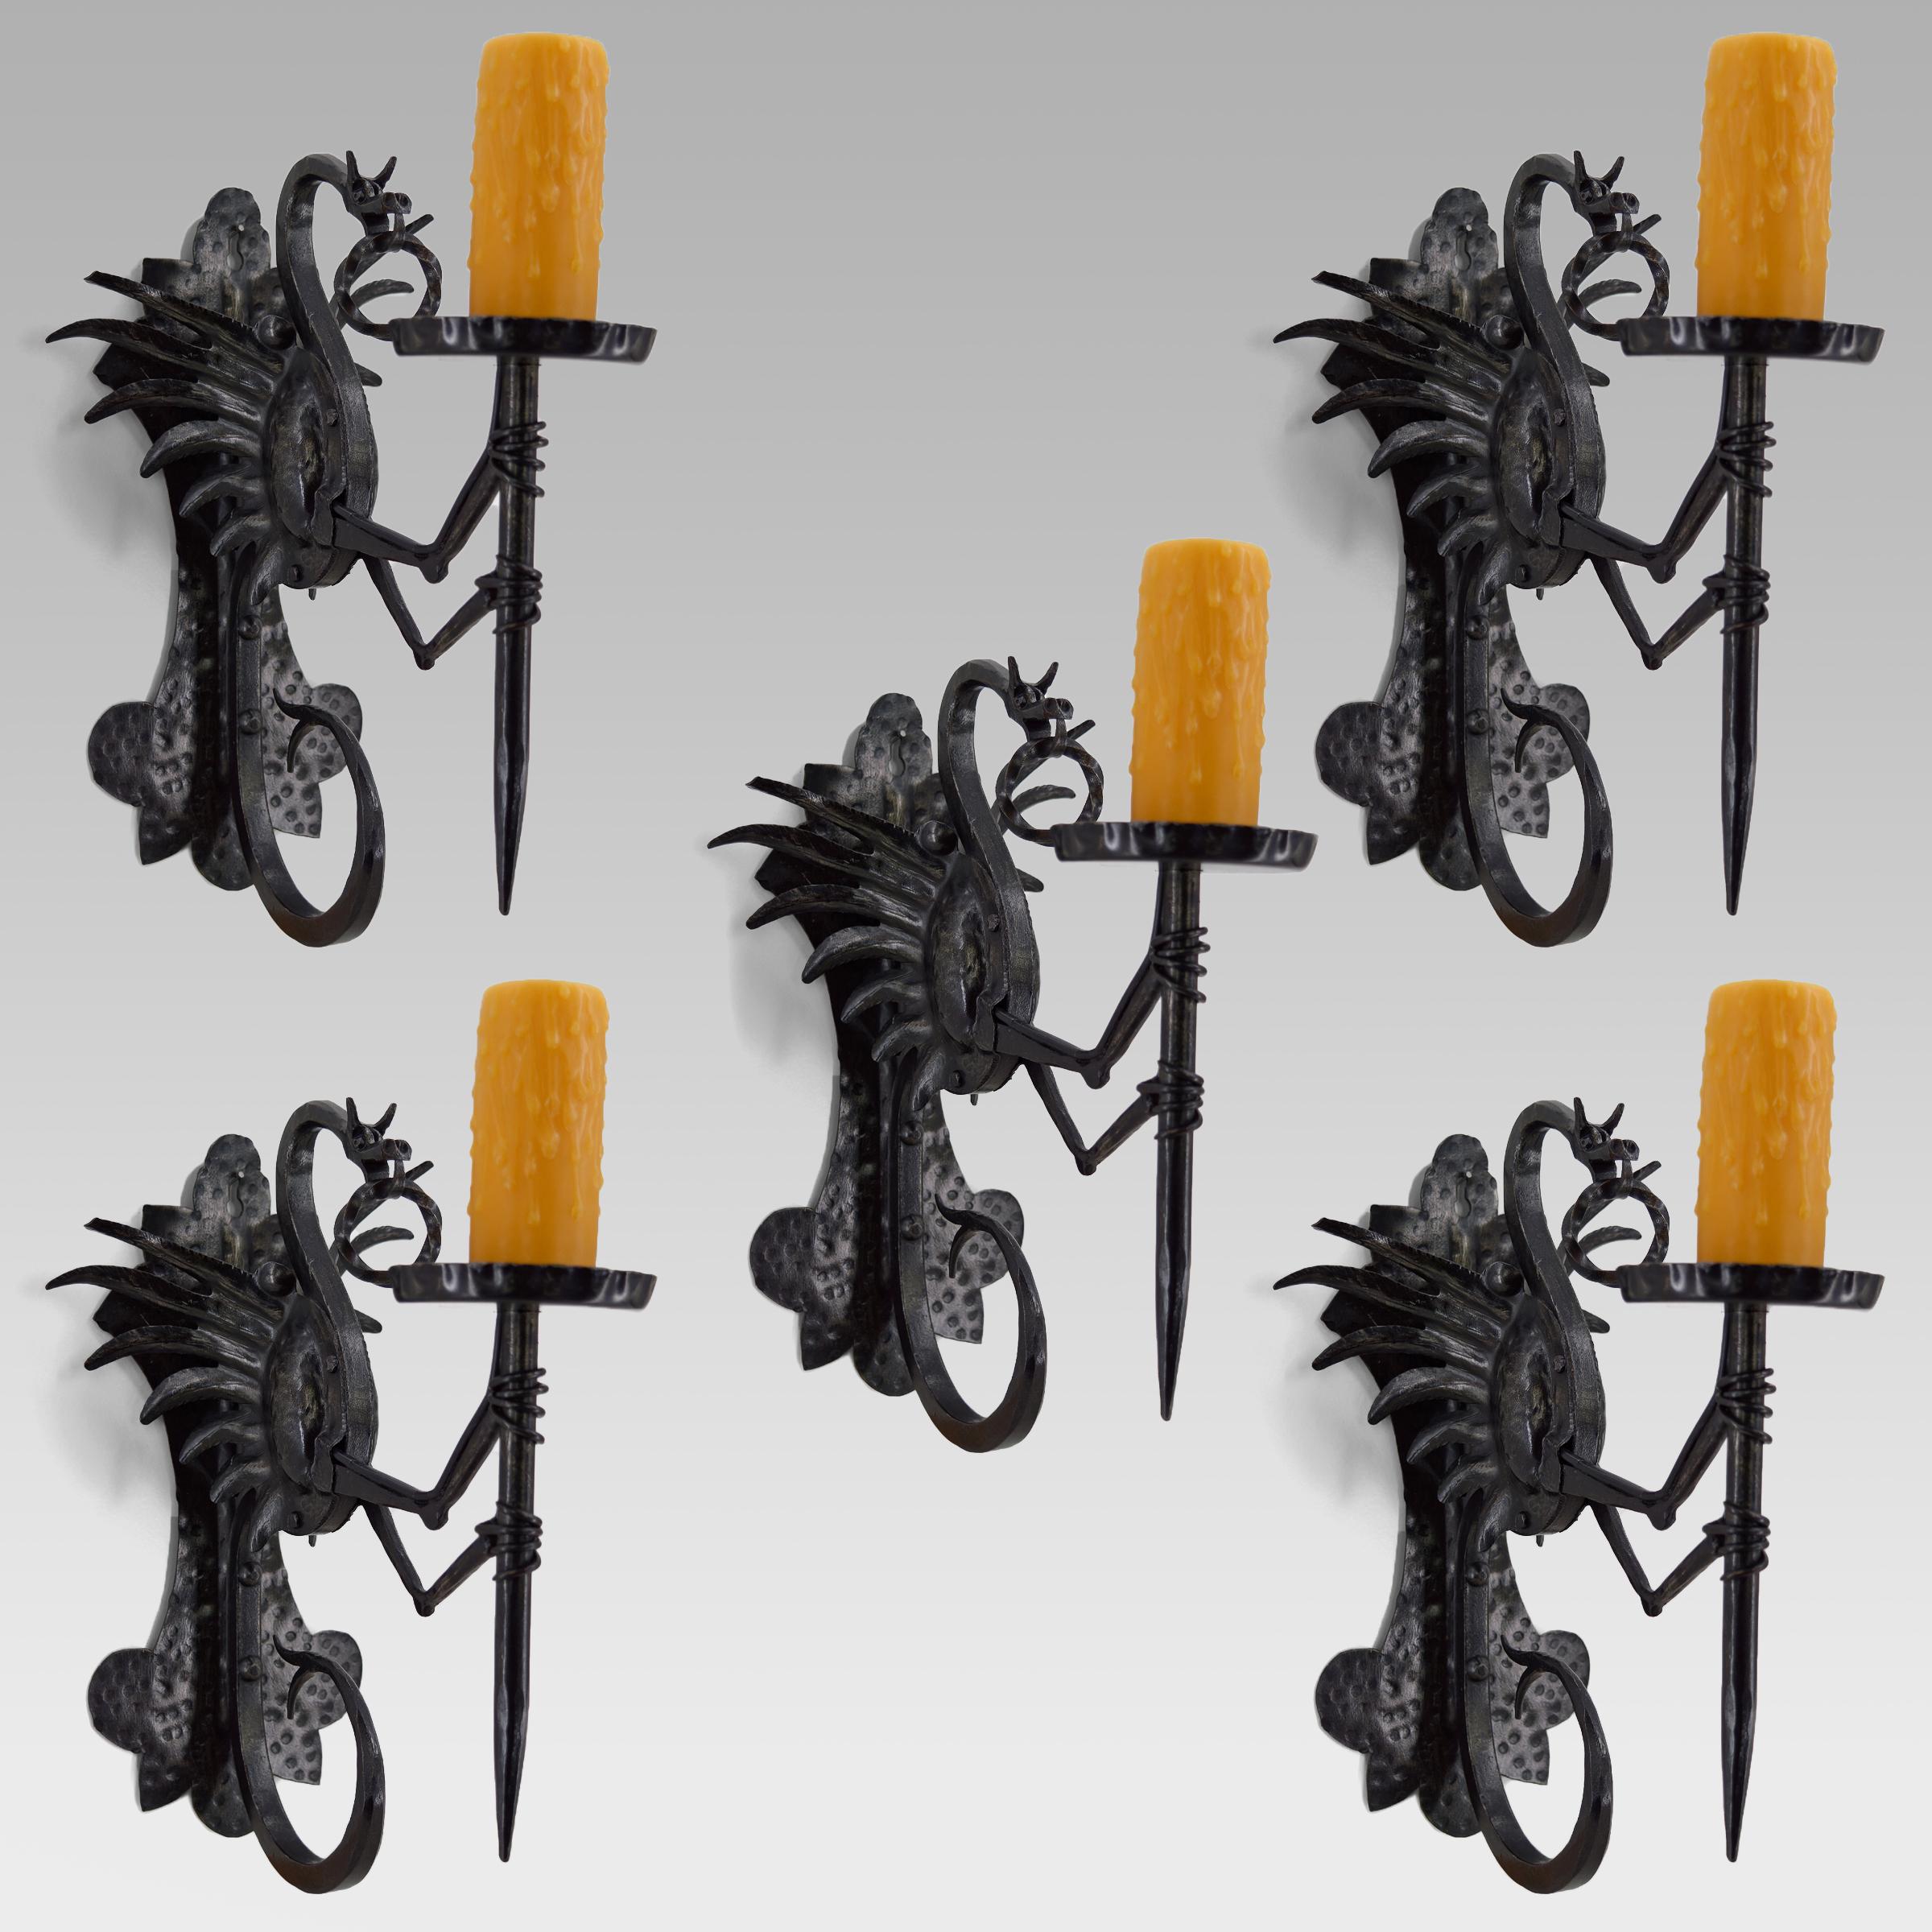 Wunderschönes Set von 5 schmiedeeisernen Wandleuchtern, die einen geflügelten Drachen darstellen, der eine Fackel / eine Fackel hält.

Gute Qualität der Herstellung: gut gemachte Gegenstände, schöne Patina des Metalls.

Neogotik/Jugendstil,